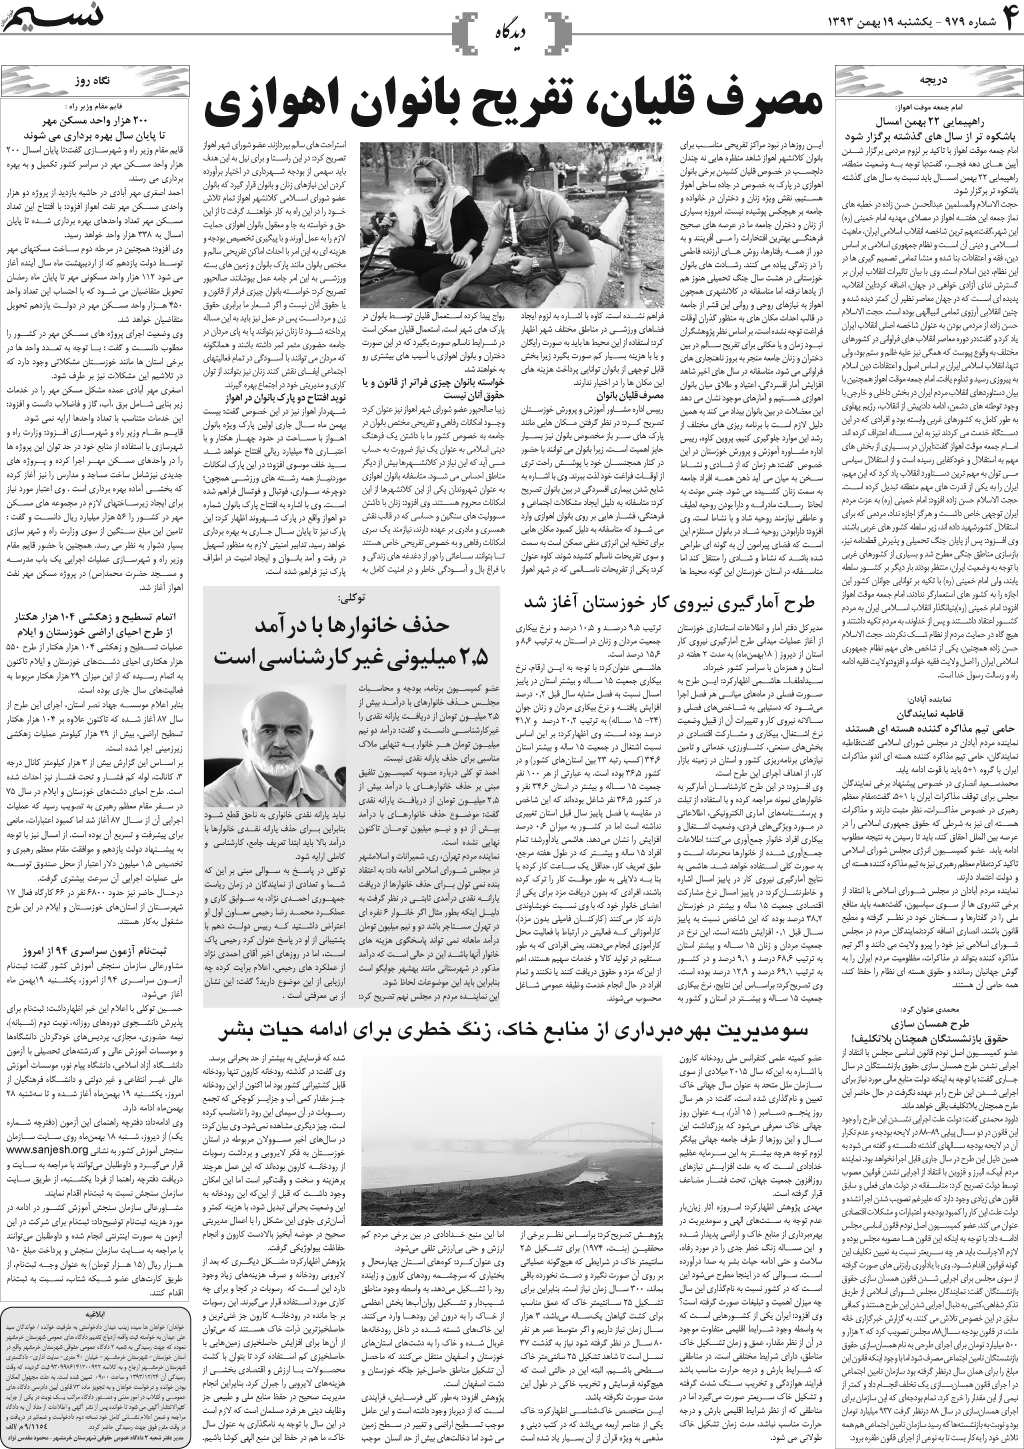 صفحه دیدگاه روزنامه نسیم شماره 979